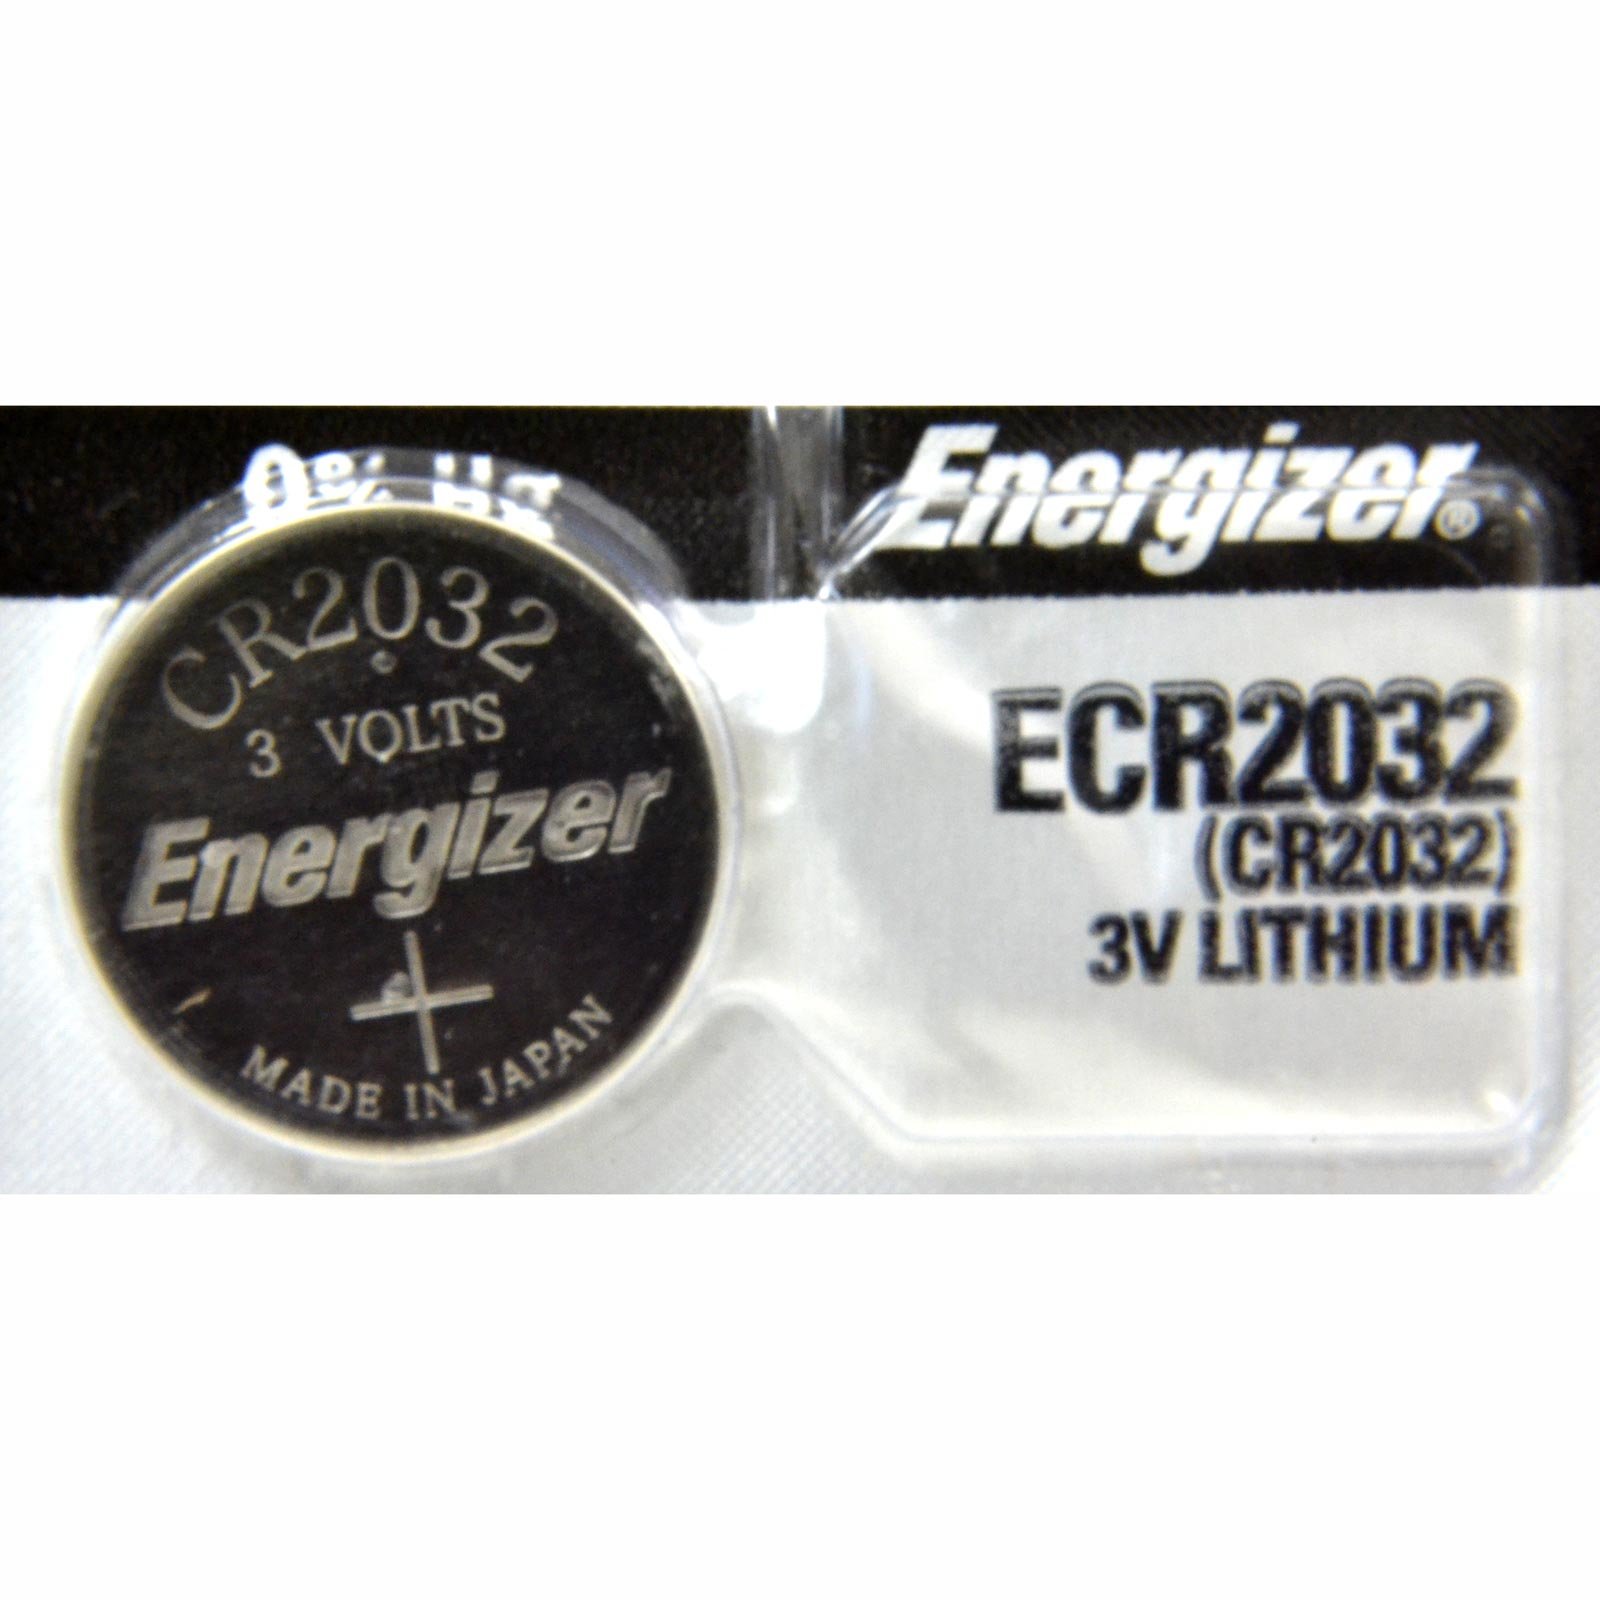 Pila de litio Energizer 2032 de 3.0v     Batería de litio tipo botón con voltaje de 3.0 volts capacidad de 235 mah composición de litio-manganesio y dióxido peso aproximado de 2.6 gramos y volumen de 0.8 centímetros cúbicos colores de la pila plateado                                              .                                        - ECR2032